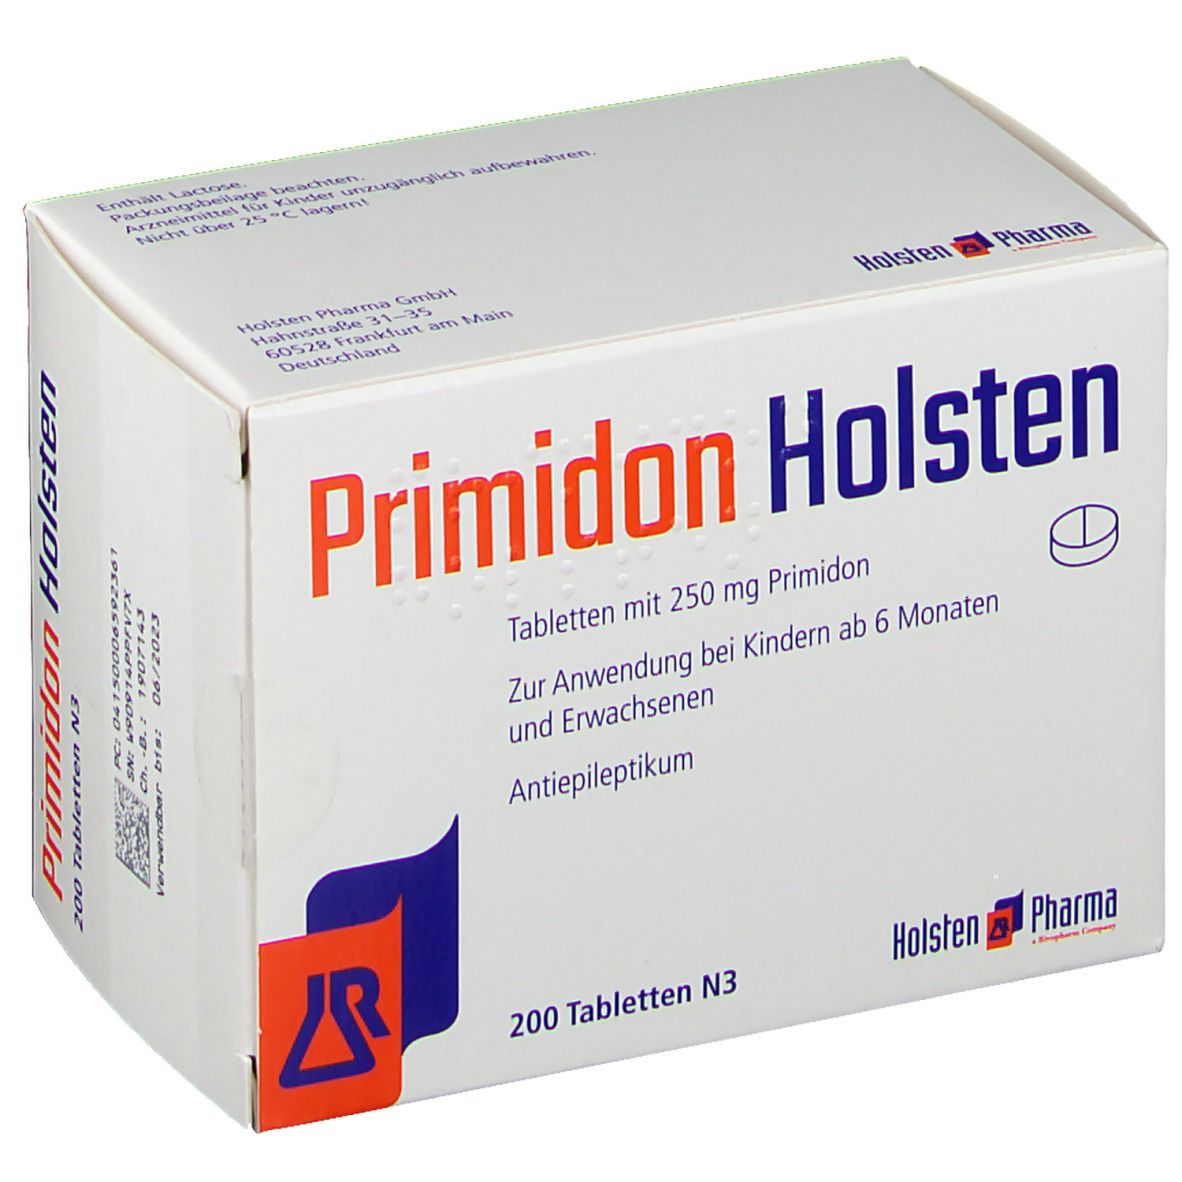 Primidon Holsten